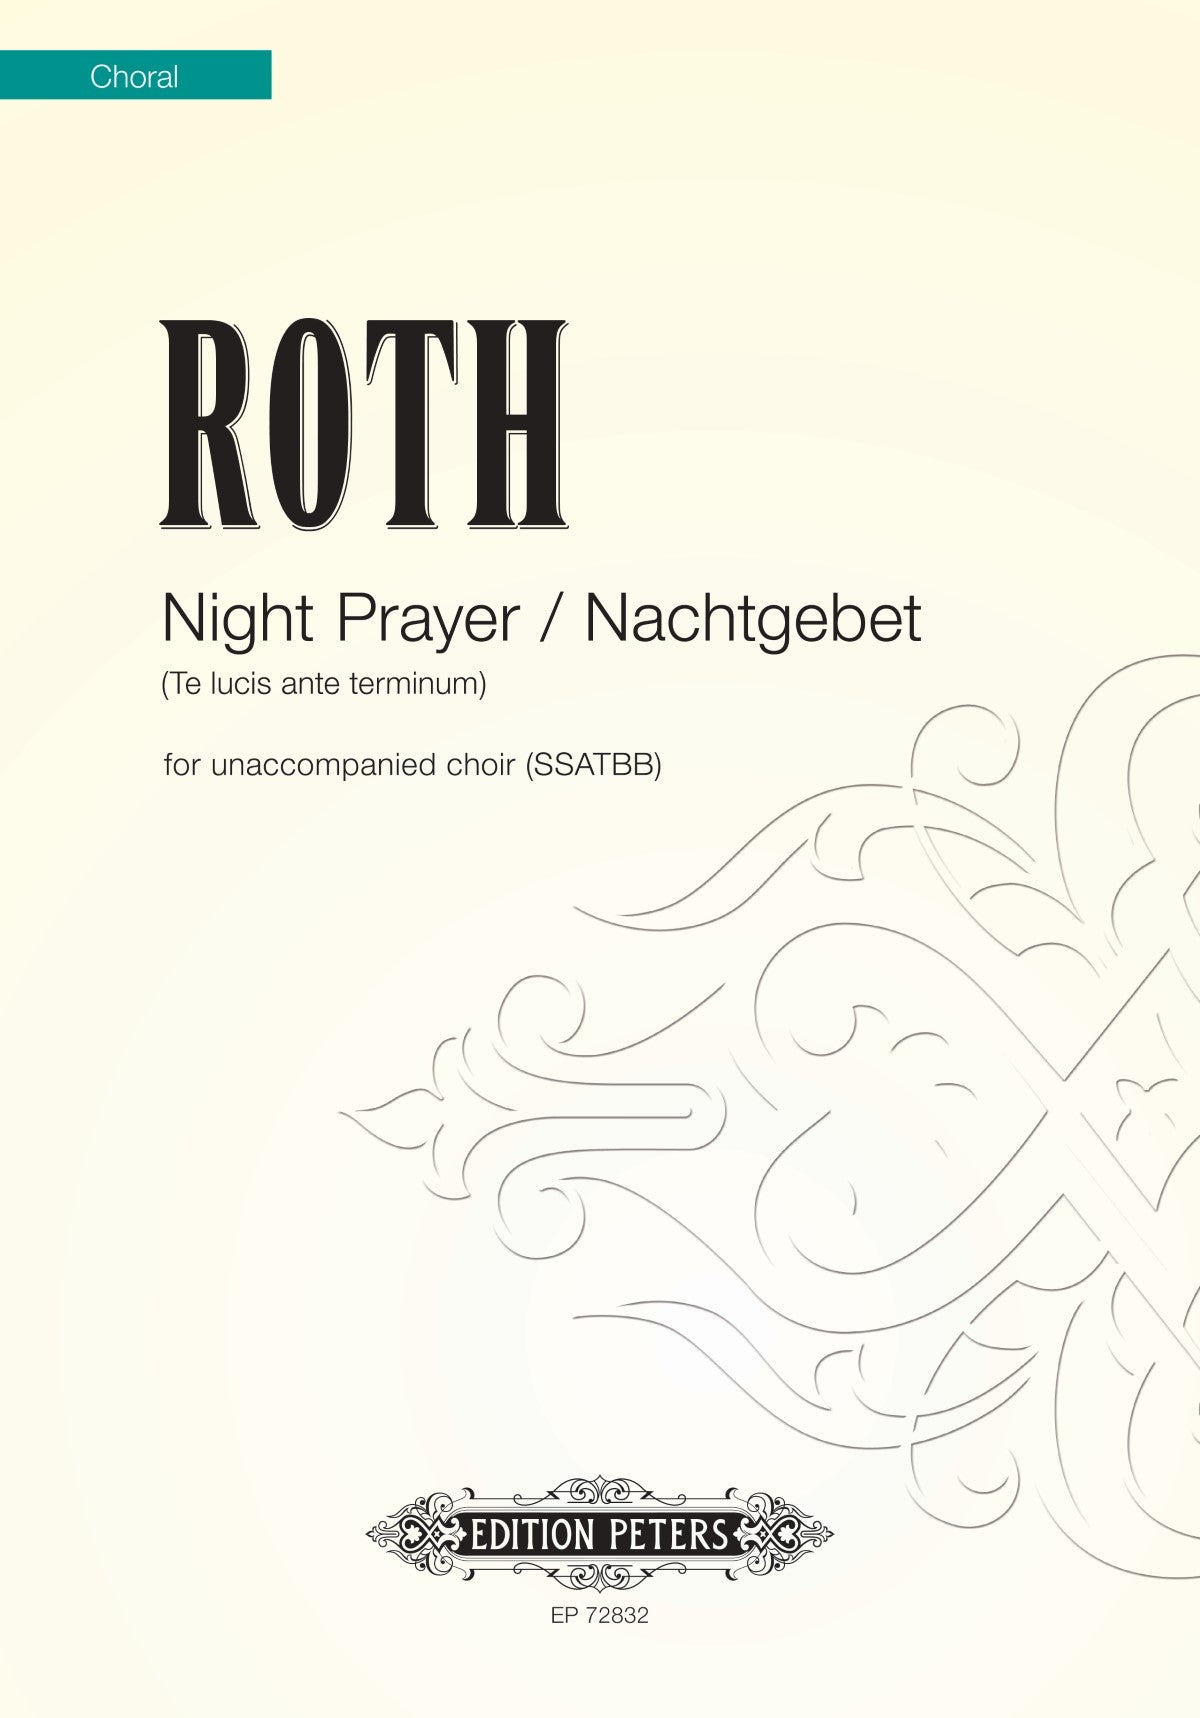 Roth Night Prayer / Nachtgebet